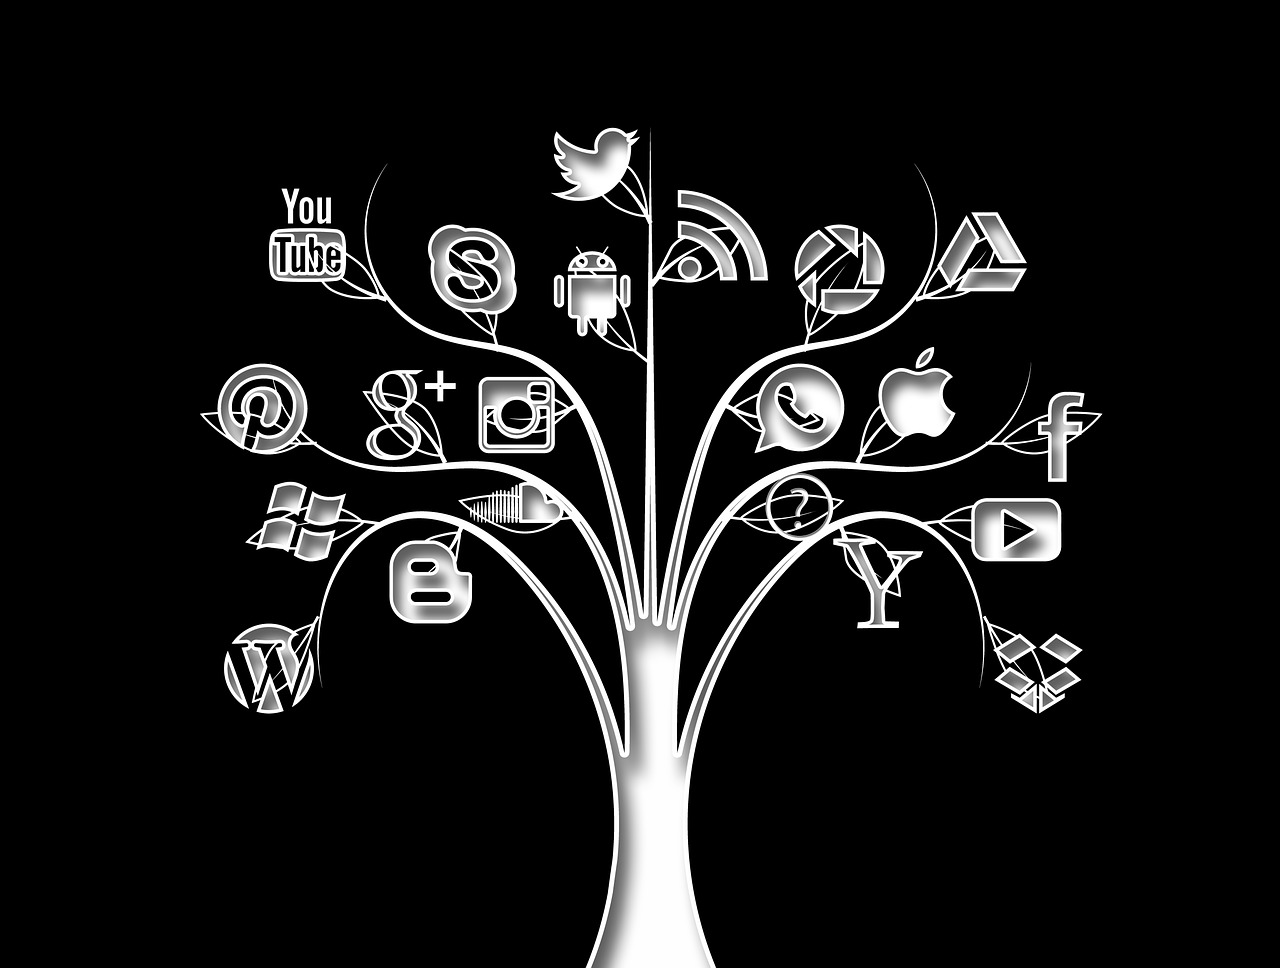 Socialinė Žiniasklaida, Medis, Struktūra, Tinklai, Internetas, Socialinis, Socialinis Tinklas, Logotipas, Socialinis Tinklas, Tinklų Kūrimas